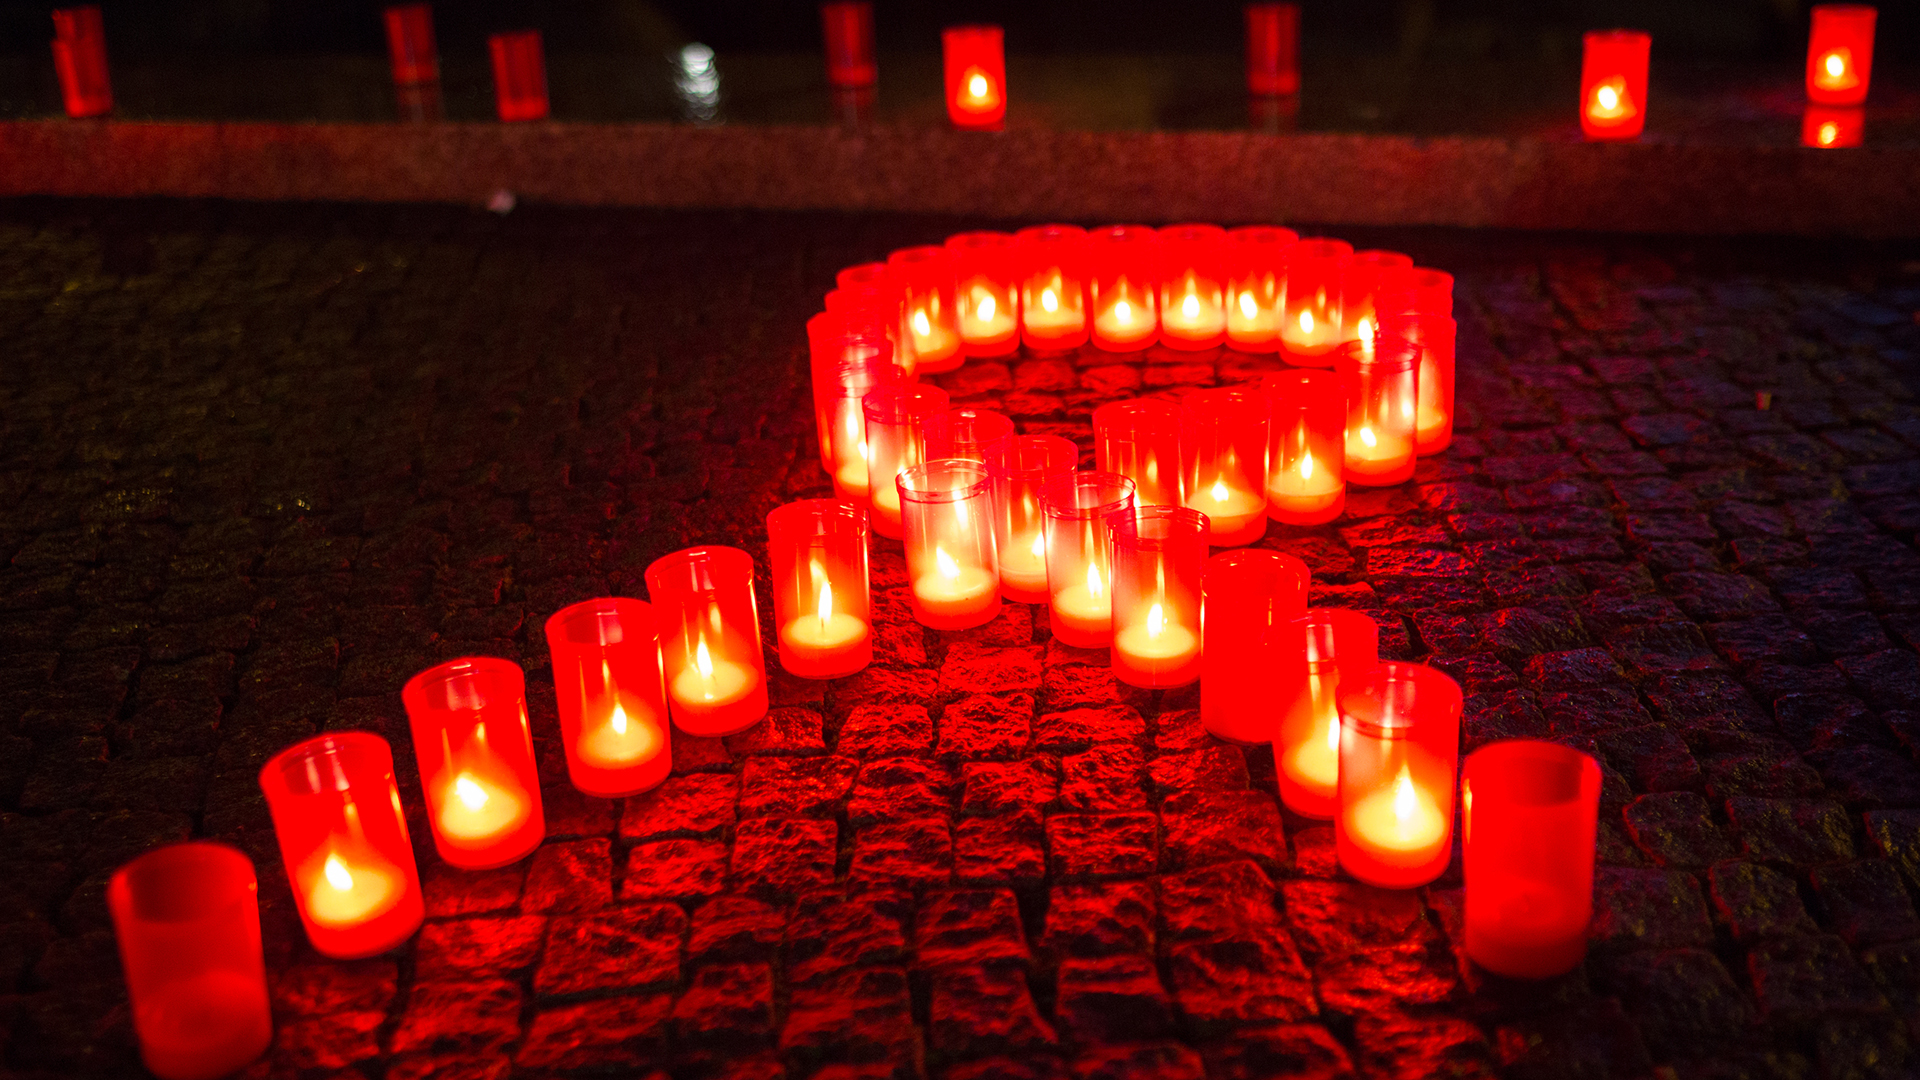 Kerzen bilden eine rote Schleife | picture alliance/dpa